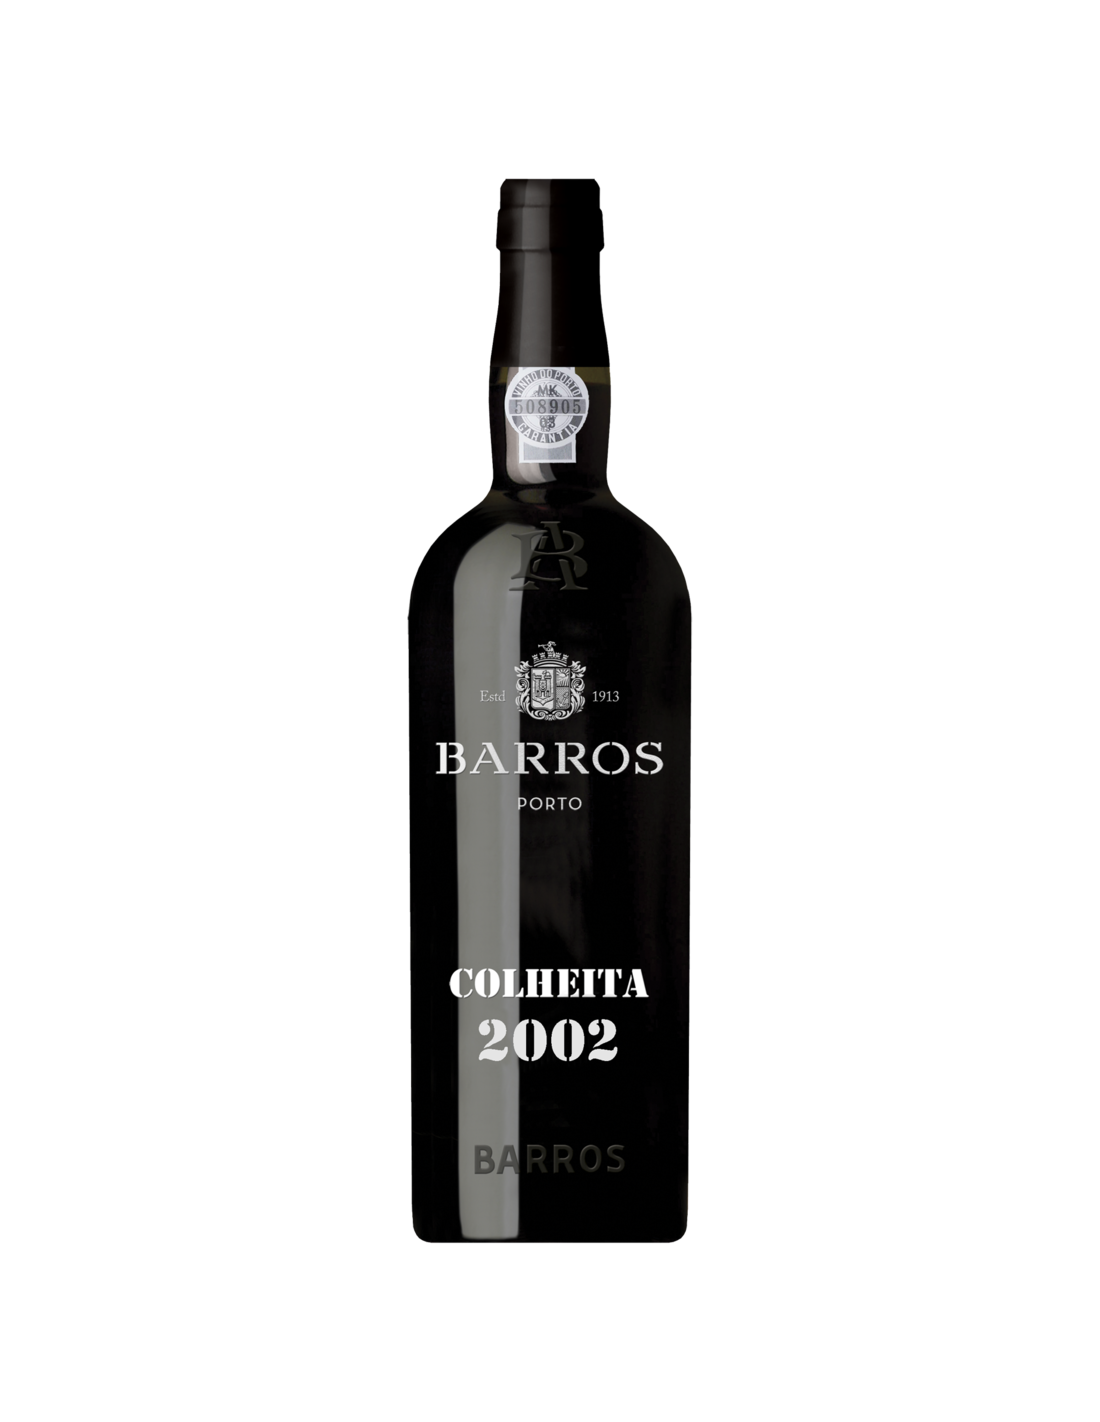 Vin porto rosu dulce, Barros Colheita, 2002, 0.75L, 20% alc., Portugalia alcooldiscount.ro